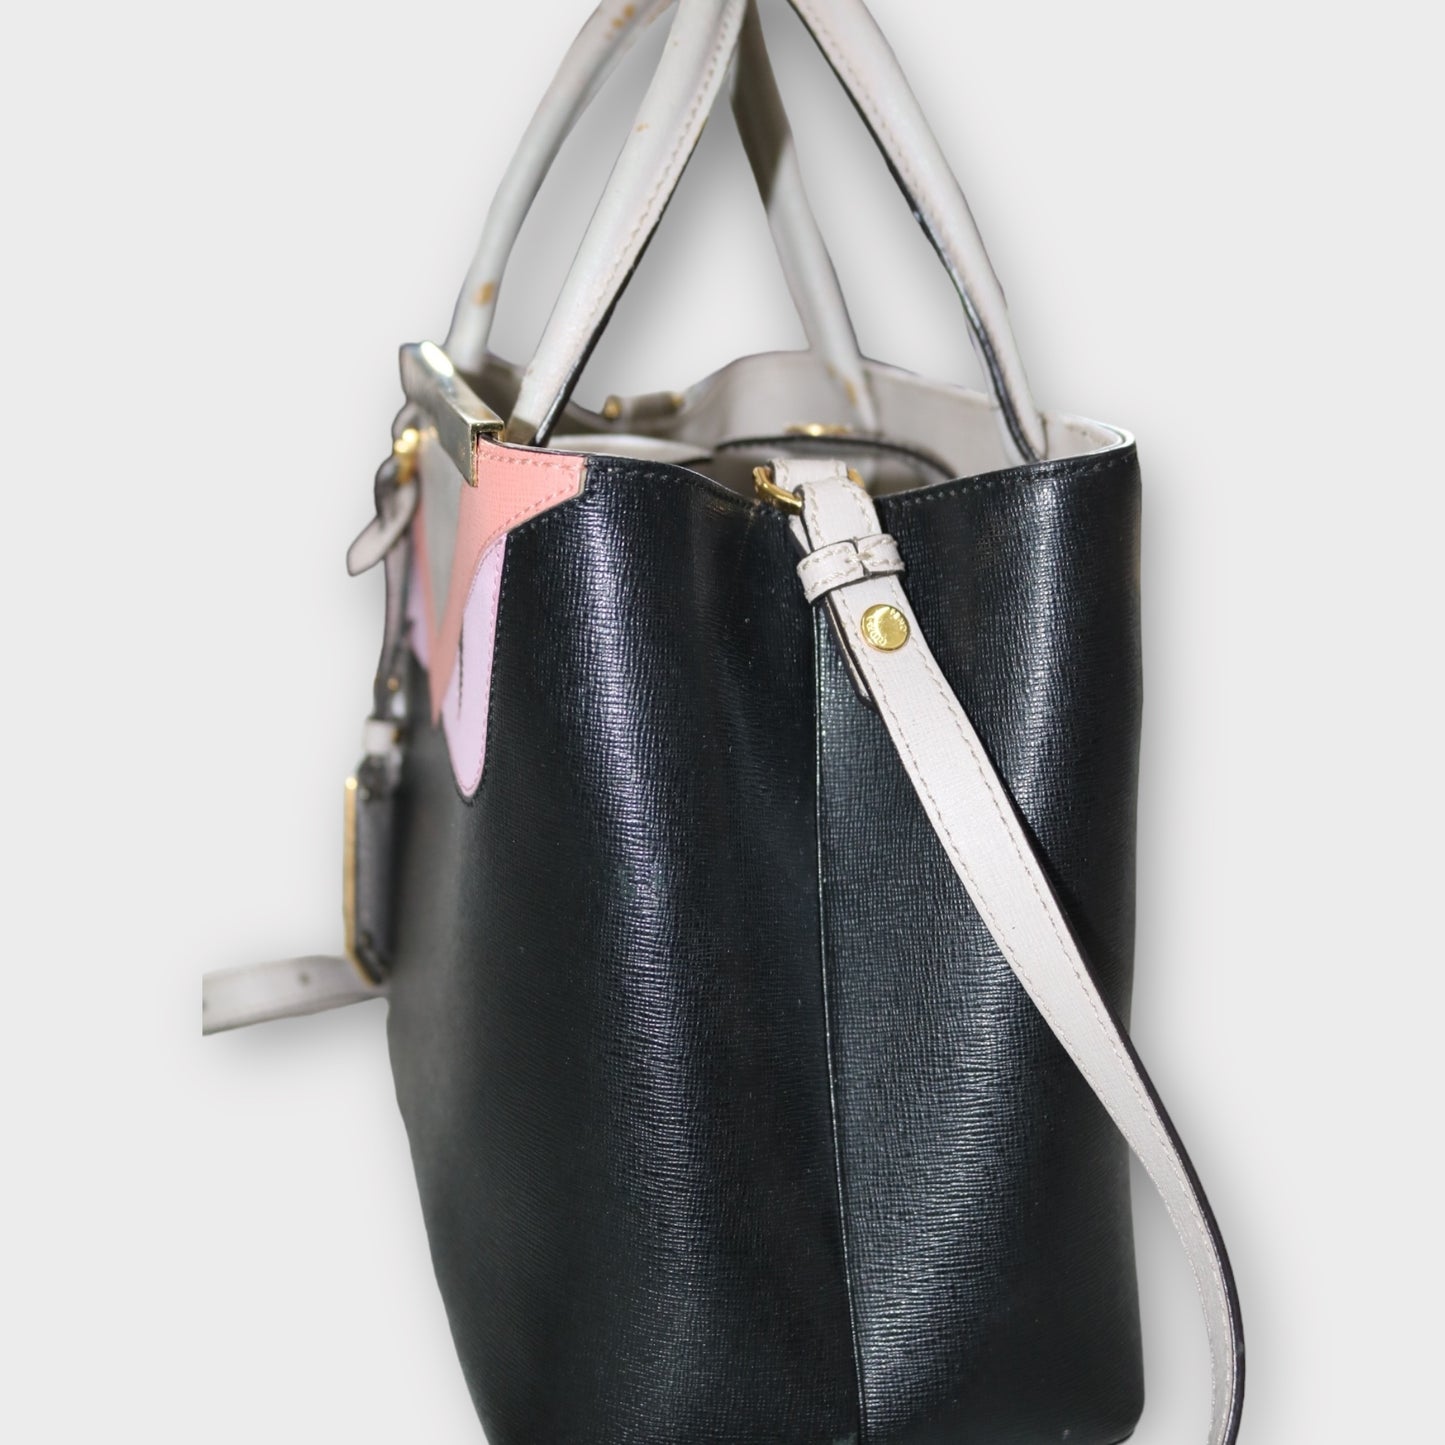 Secondhand Black and Cream Fendi Designer Handbag